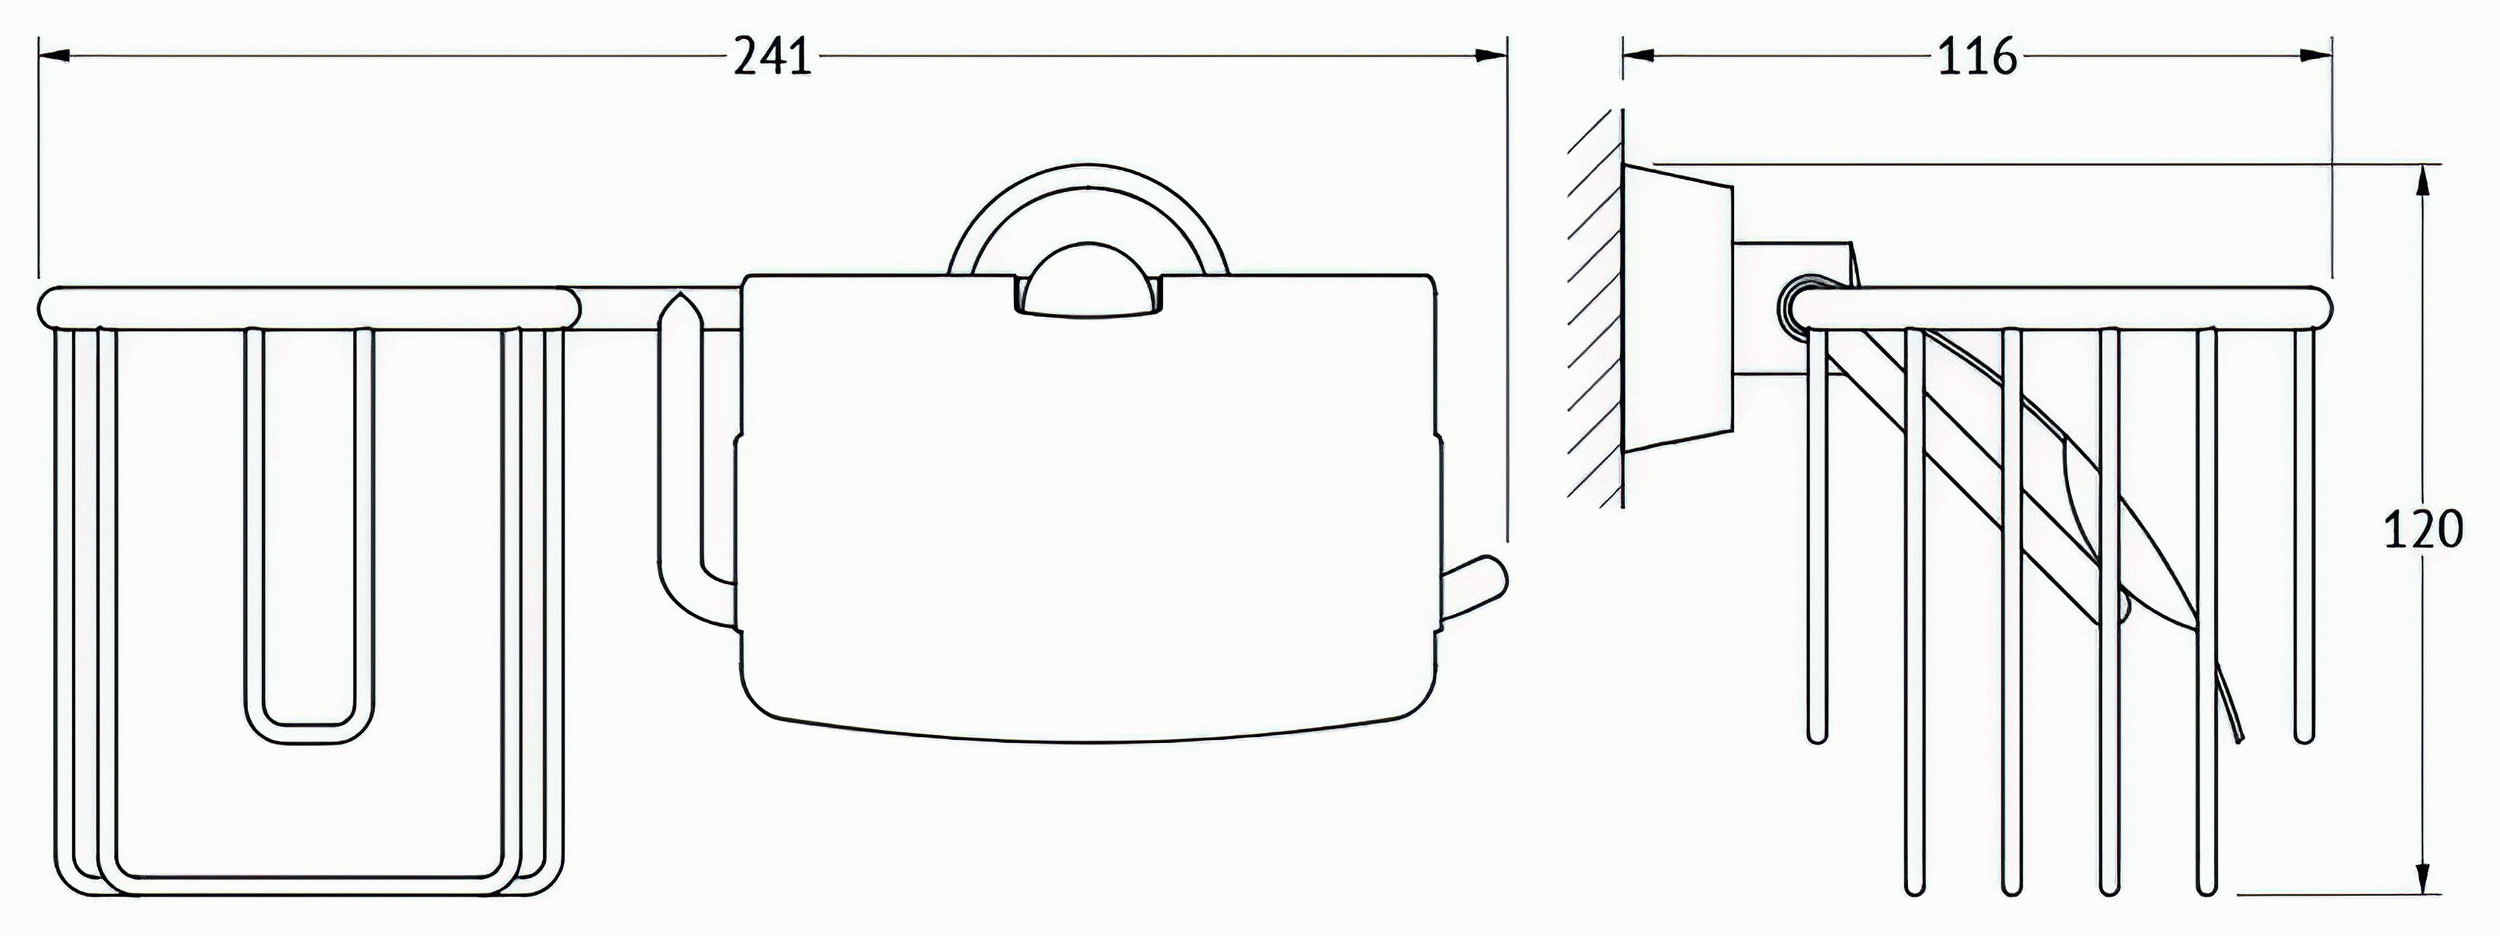 FBS Vizovice VIZ054 Держатель освежителя воздуха и туалетной бумаги с крышкой